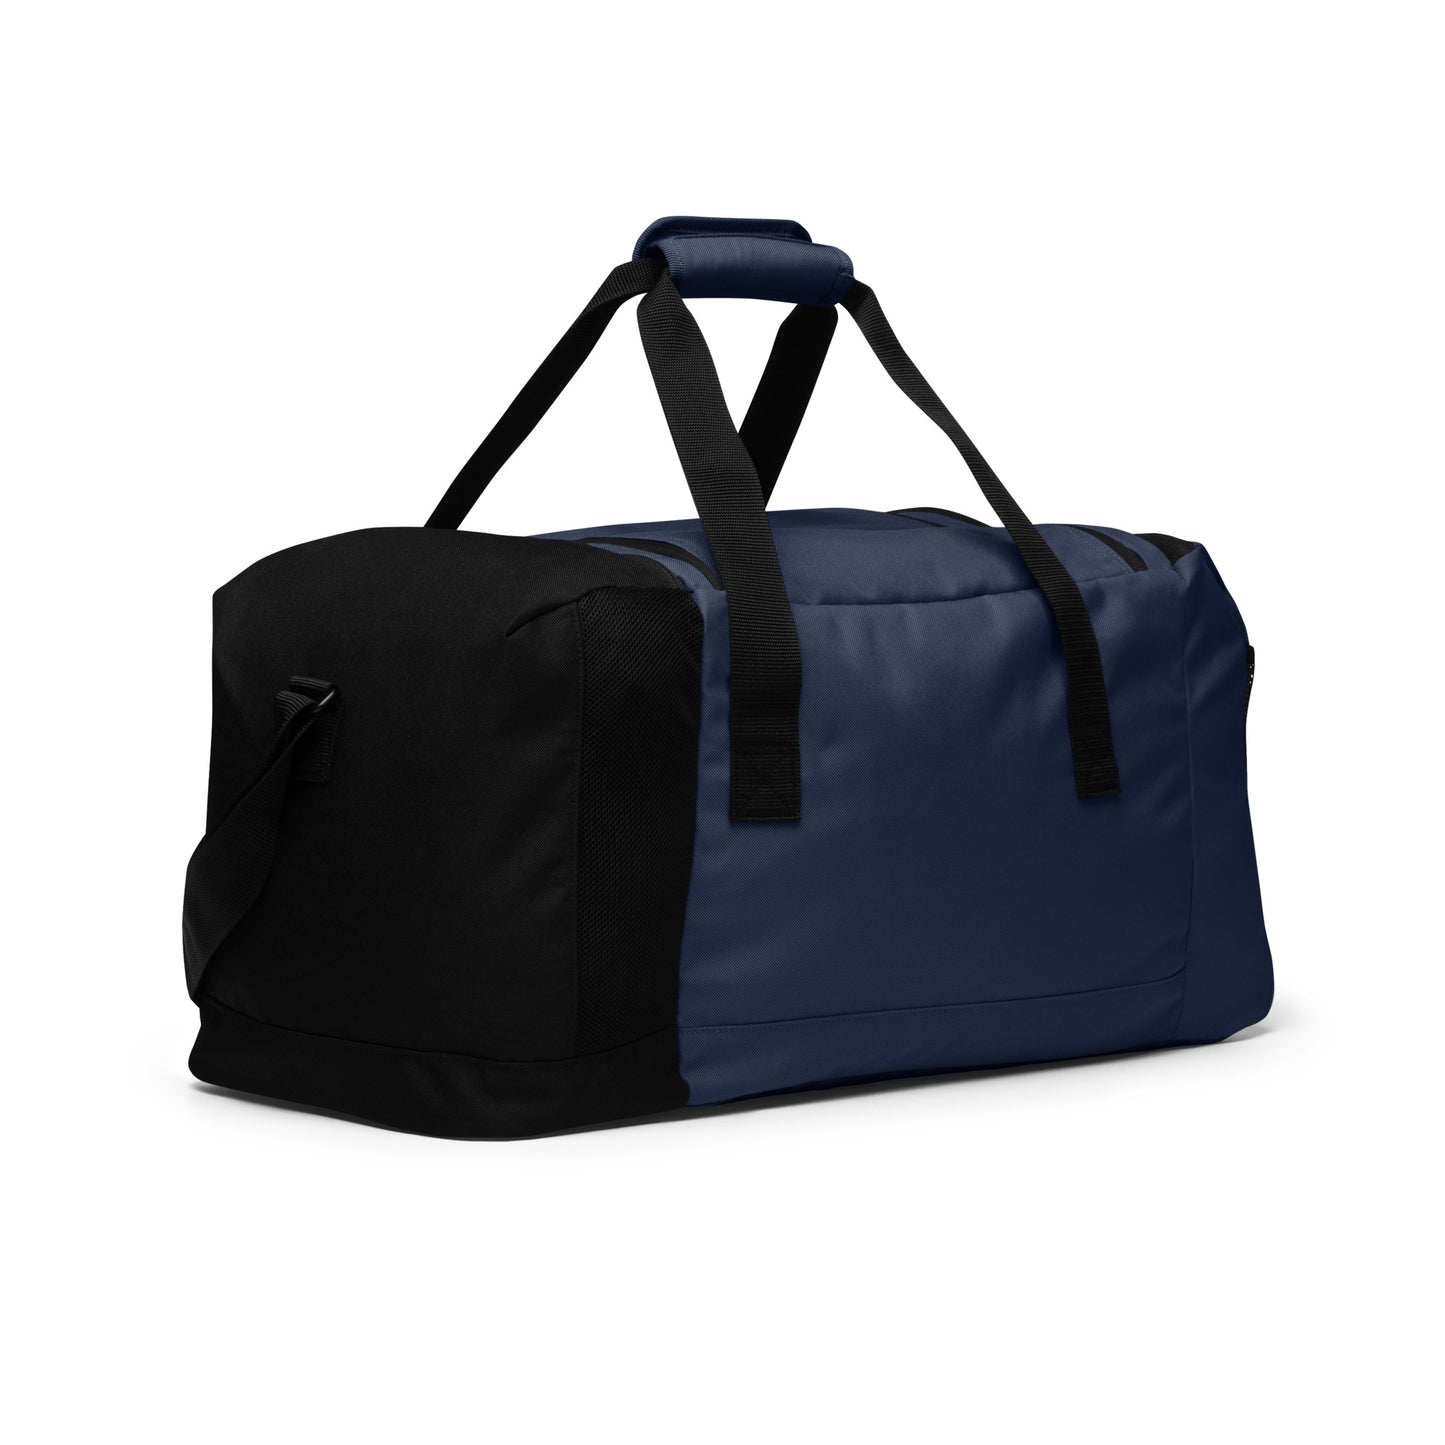 Aett - Adidas Duffle Bag